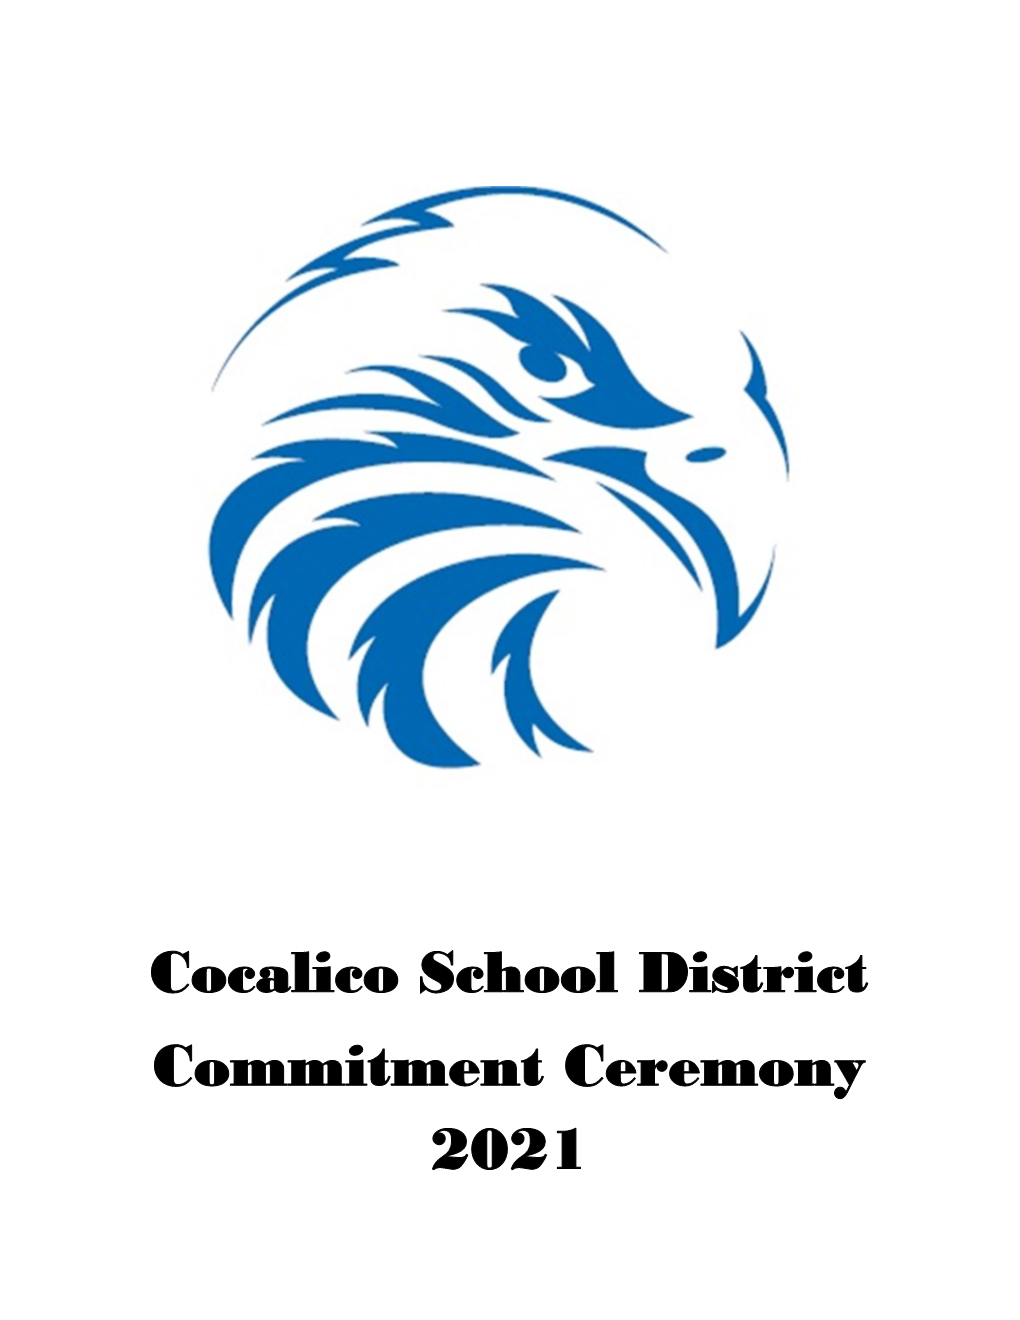 Cocalico School District Commitment Ceremony 2021 Cocalico School District